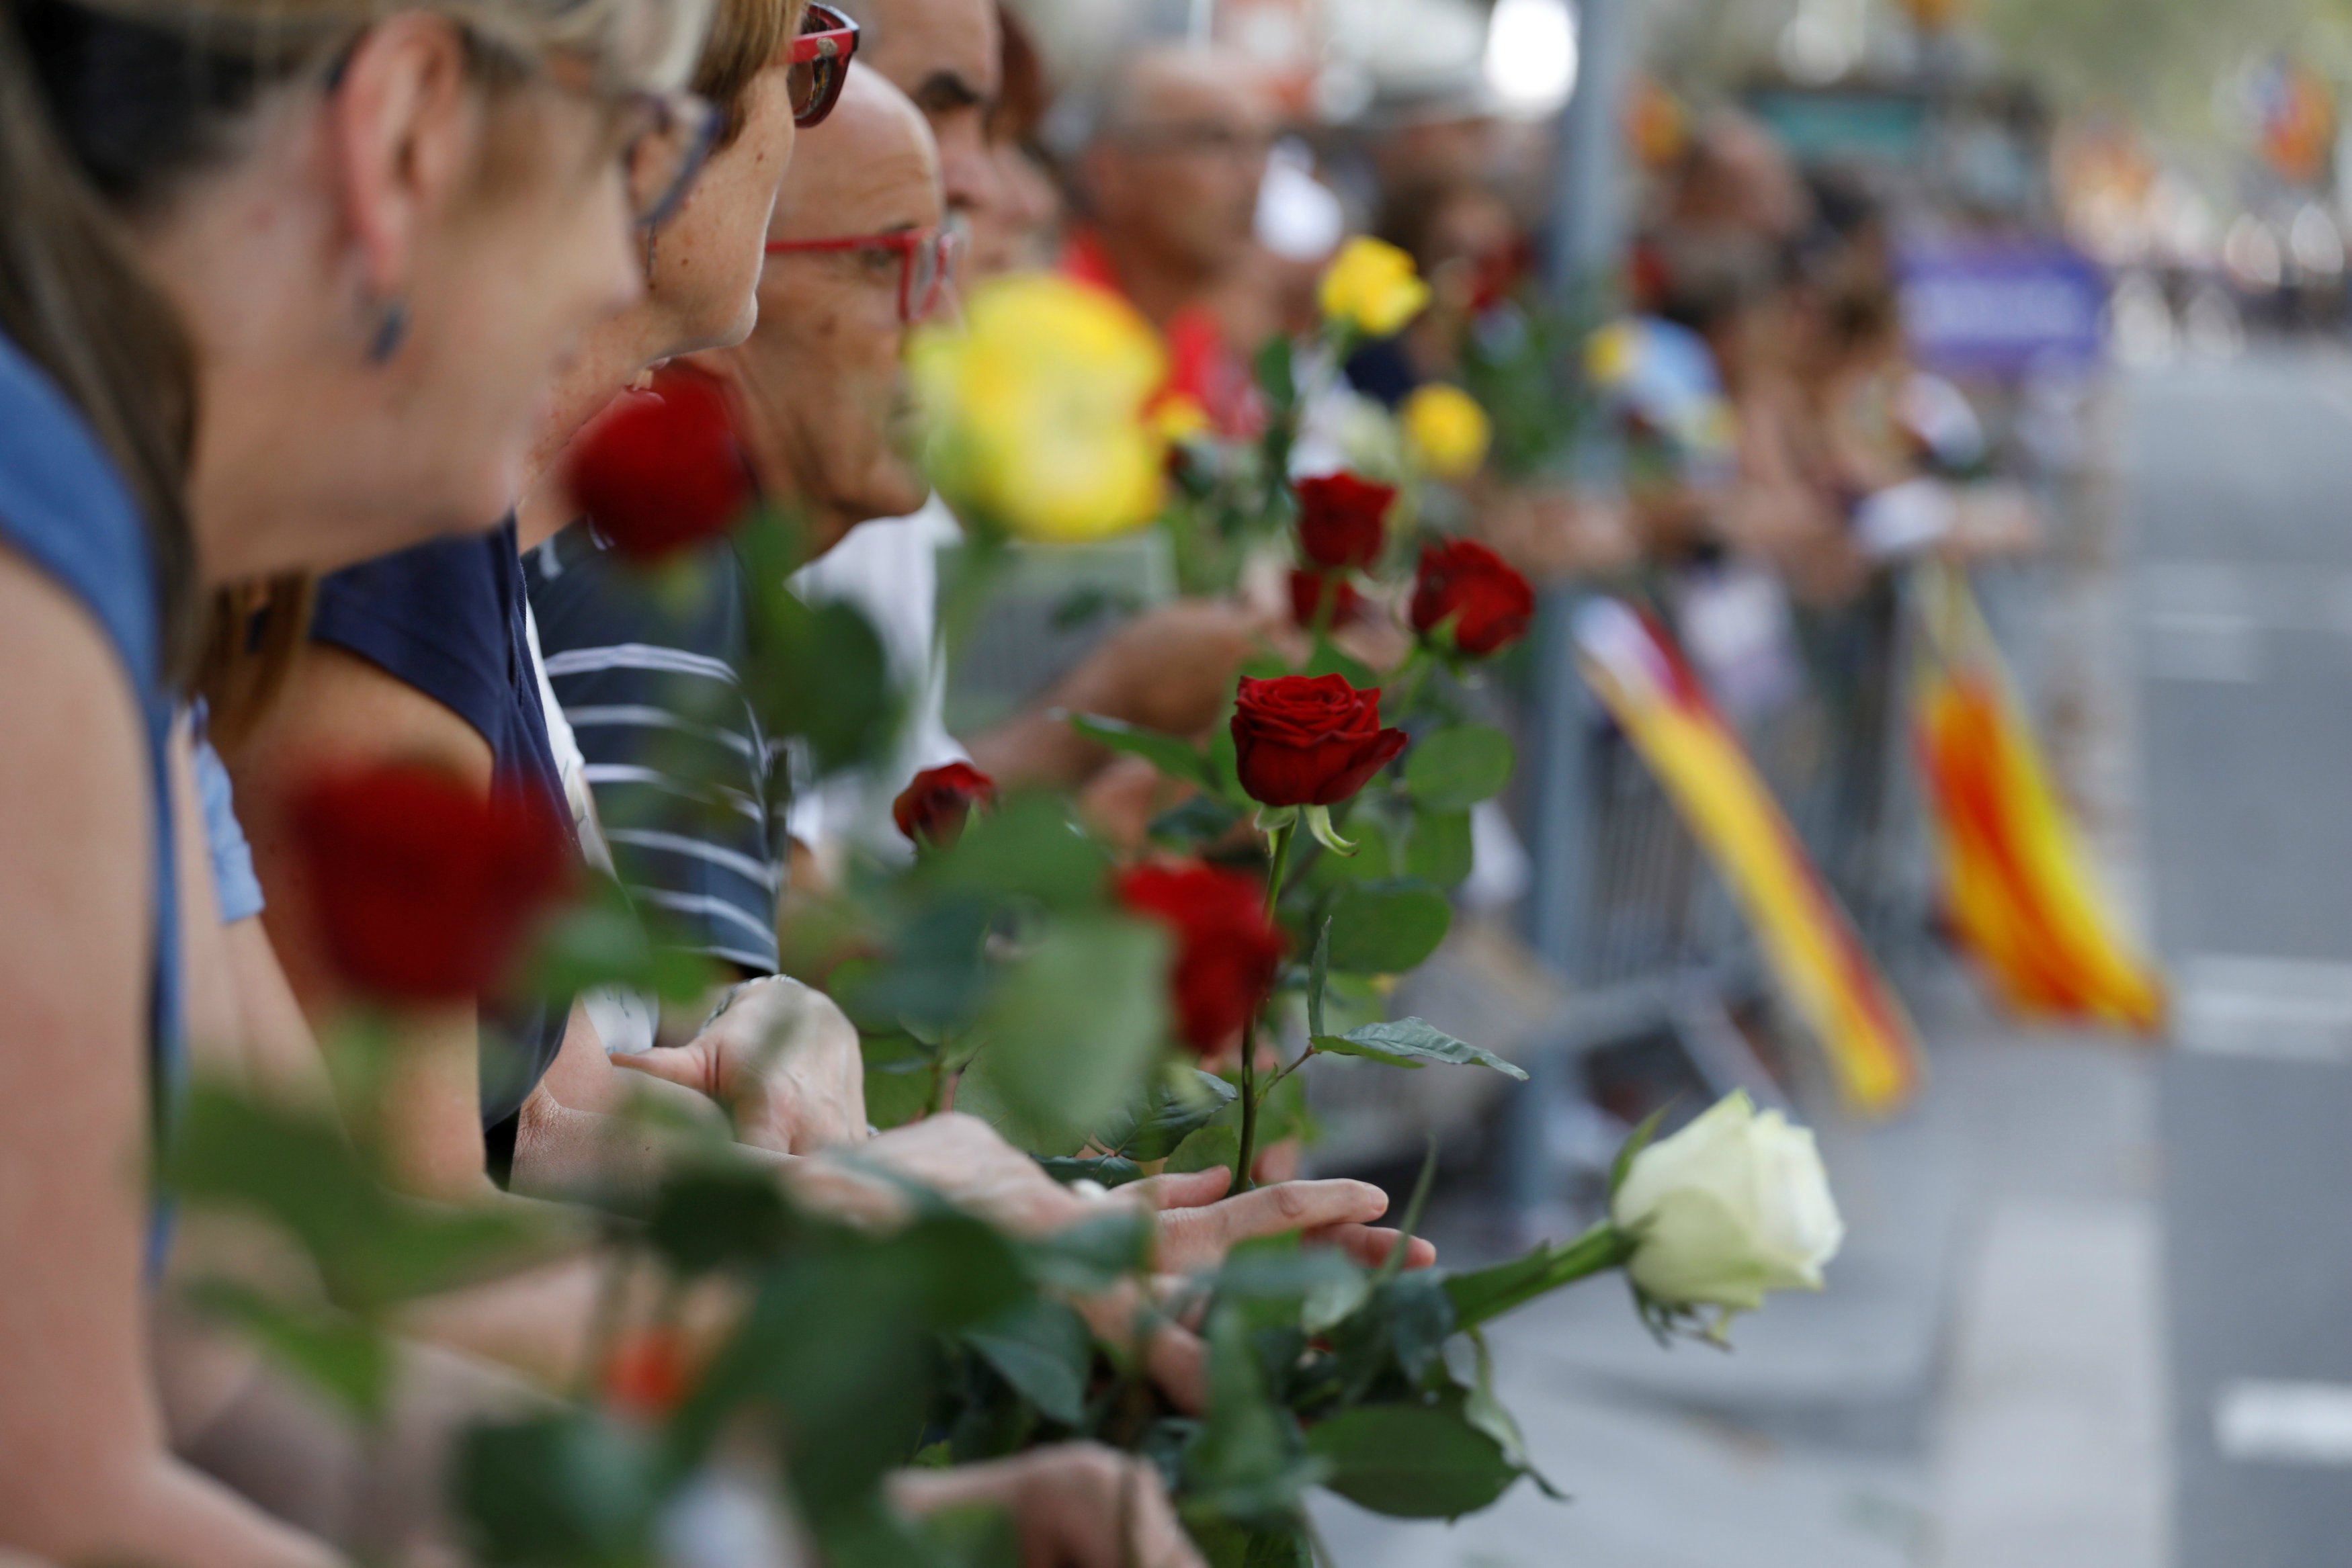 Barcelona se manifiesta contra el terrorismo bajo el lema "No tengo miedo" 5